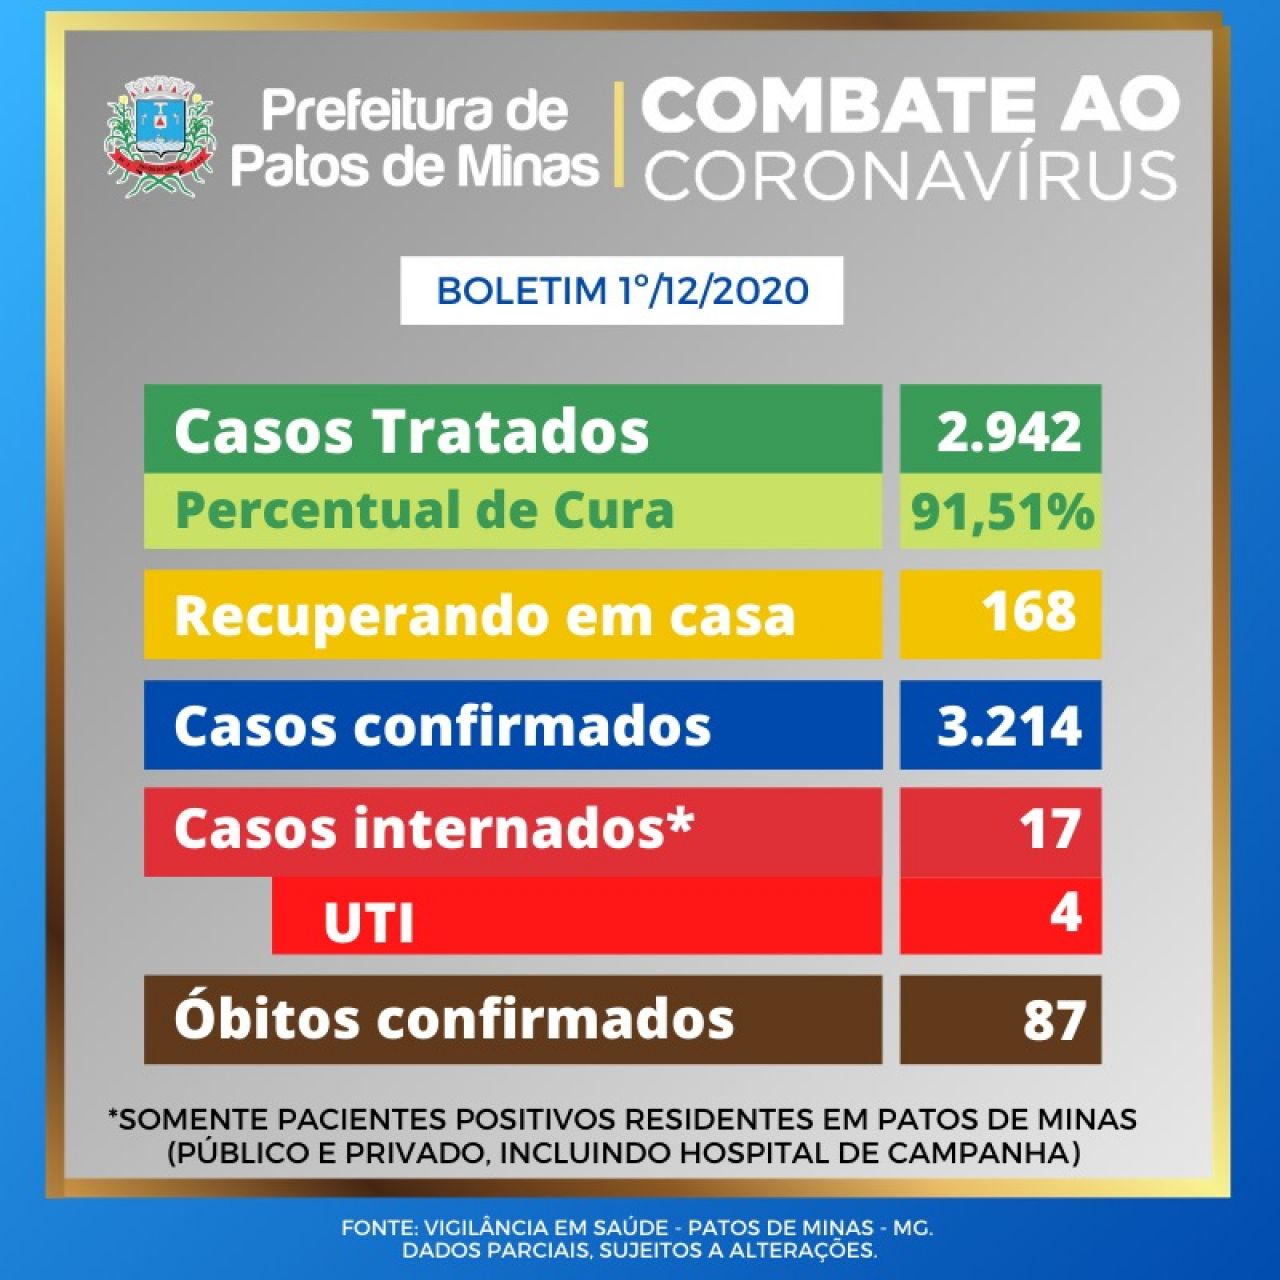 Covid-19: atualização do boletim epidemiológico informa 2 novos óbitos em Patos de Minas